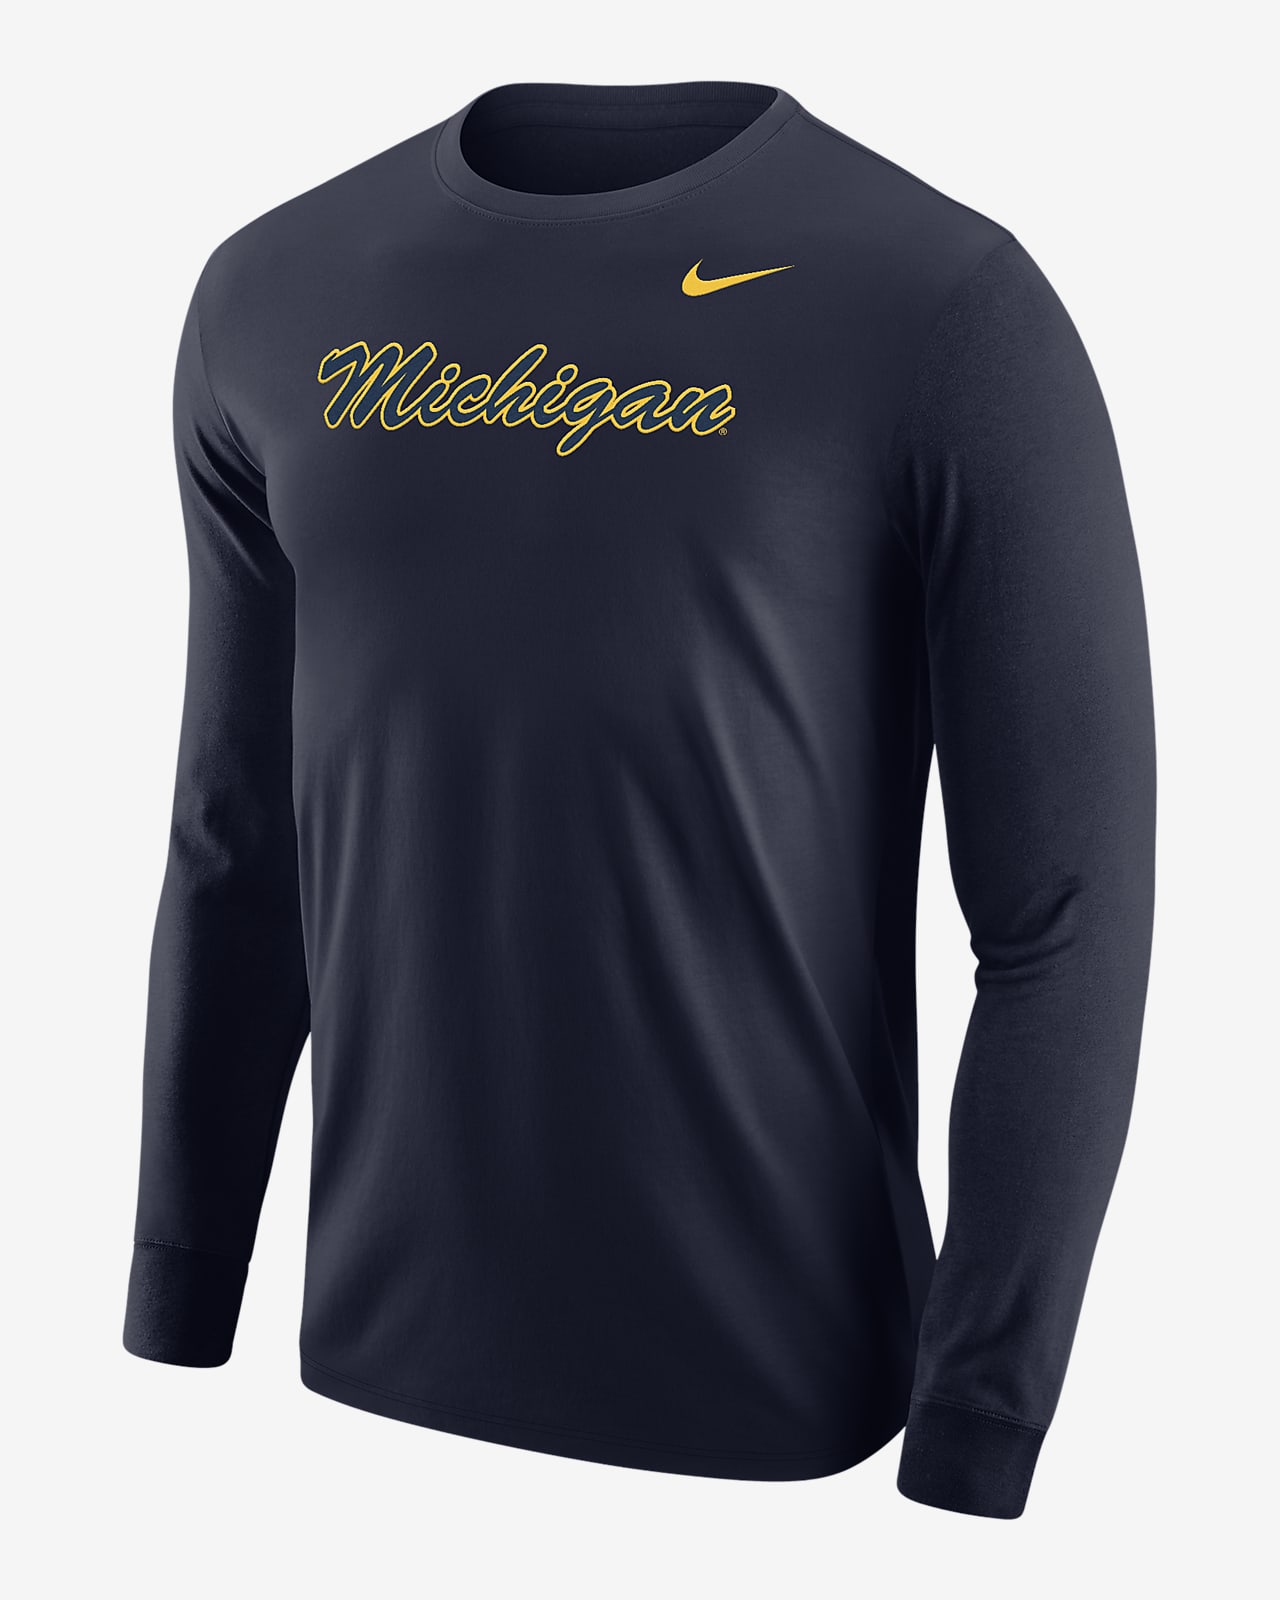 Michigan Men's Nike College Long-Sleeve T-Shirt